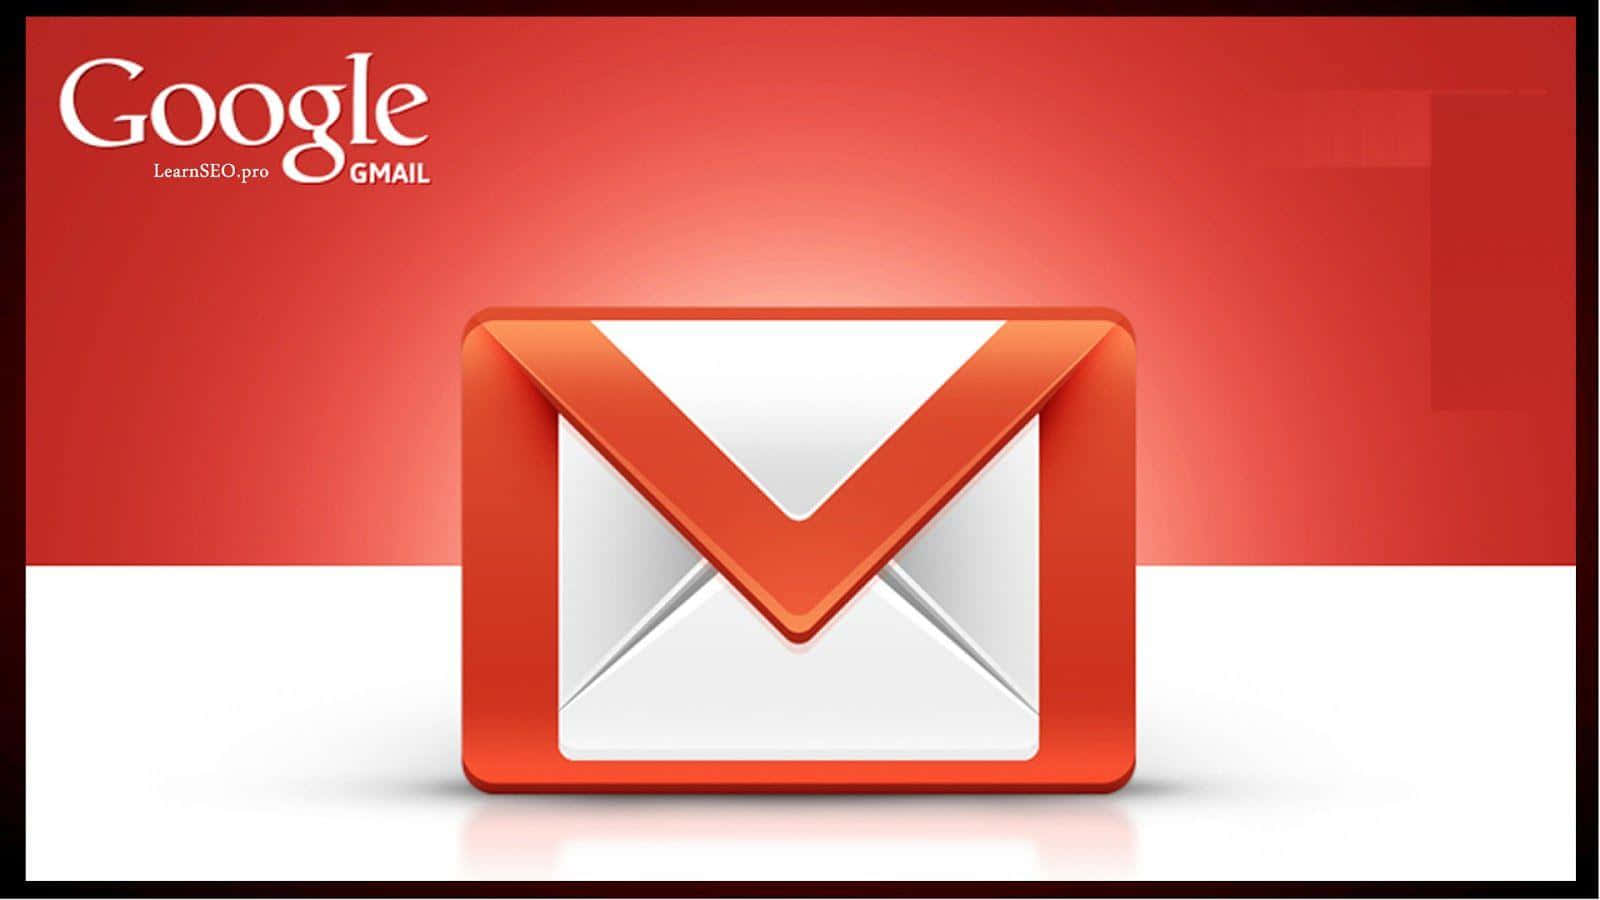 Opretsmukke Beskeder Med Gmail.